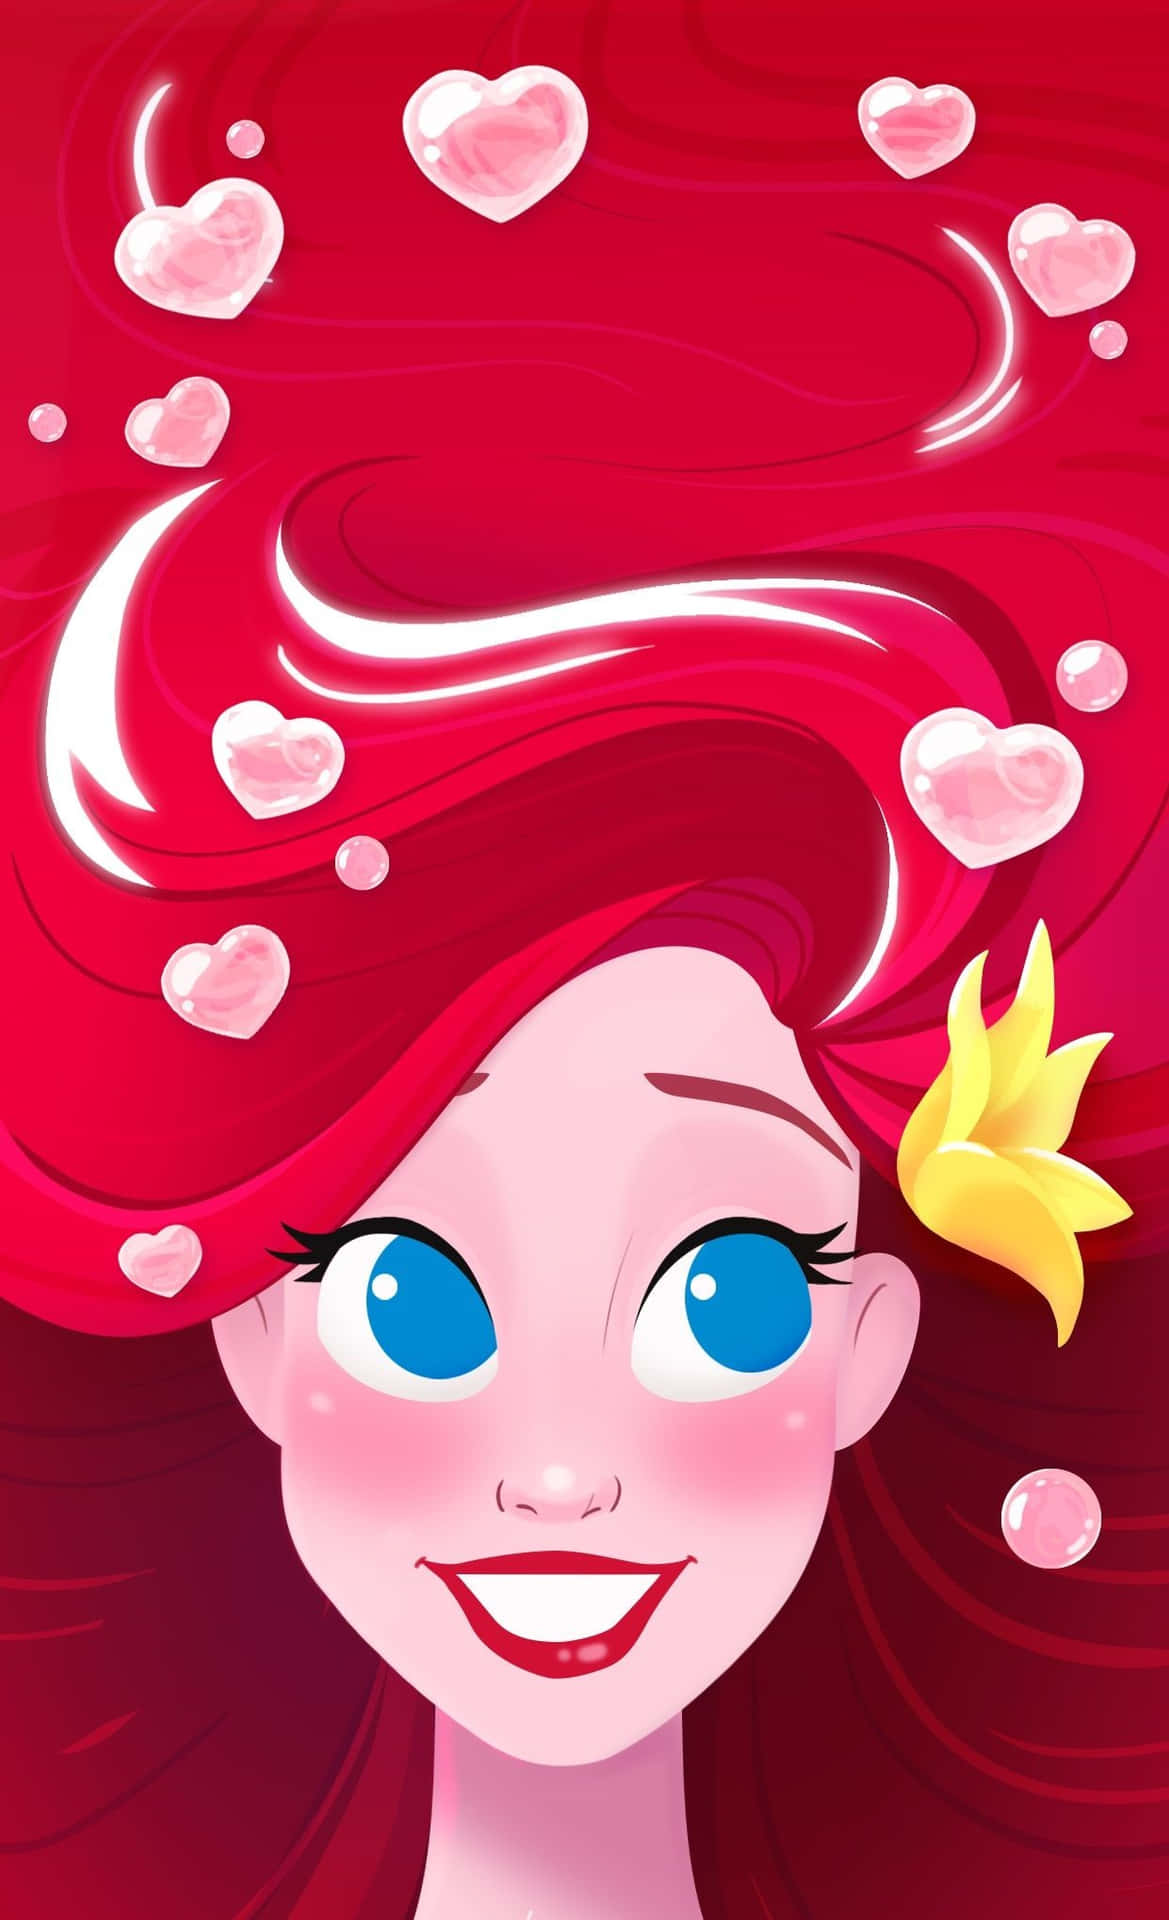 Uttryckdin Kärlek På Alla Hjärtans Dag Med Disney! Wallpaper